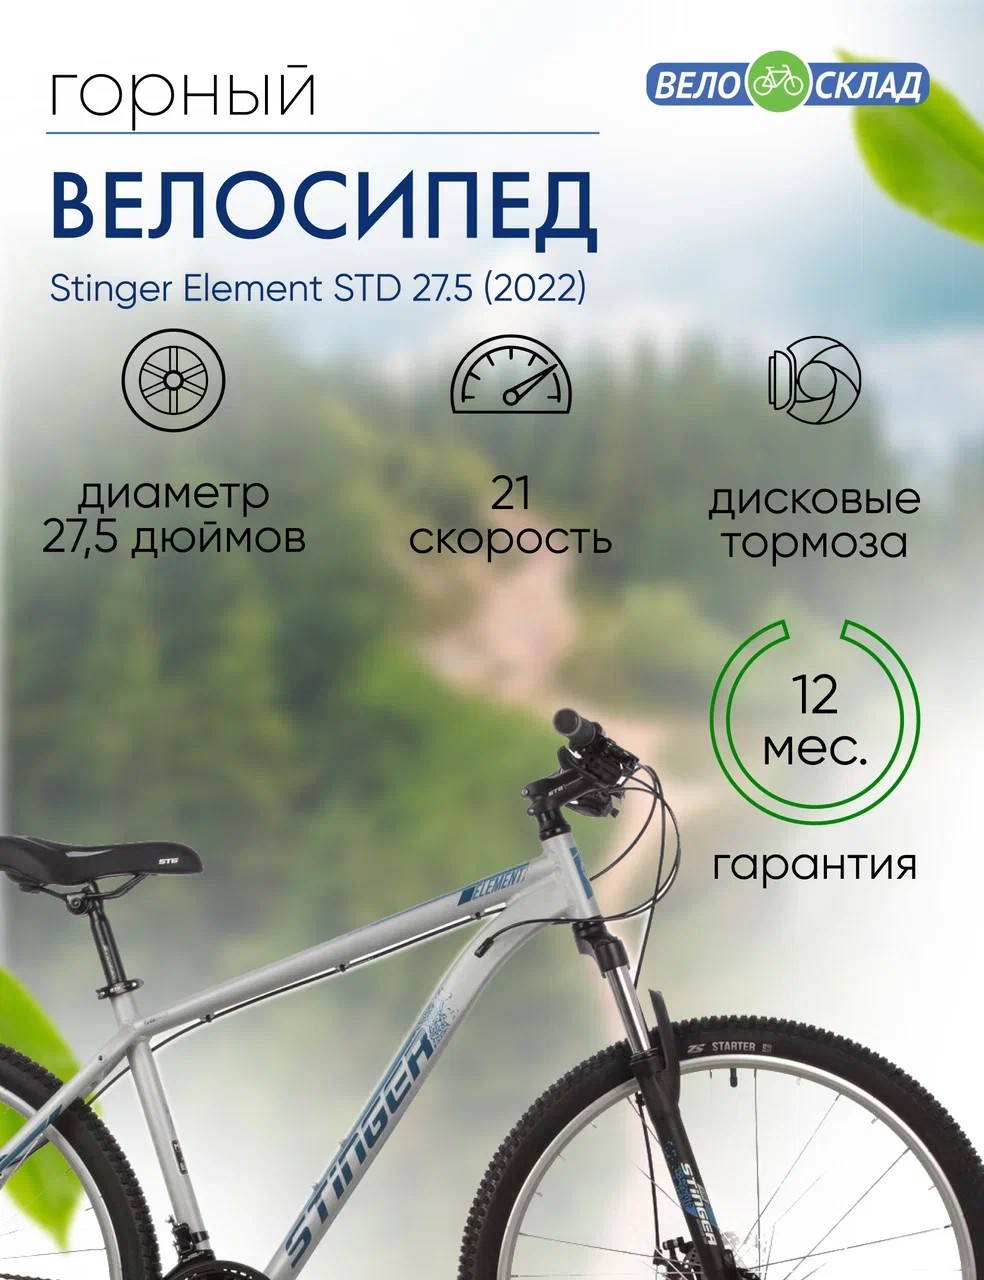 Горный велосипед Stinger Element STD 27.5, год 2022, цвет Серебристый, ростовка 16